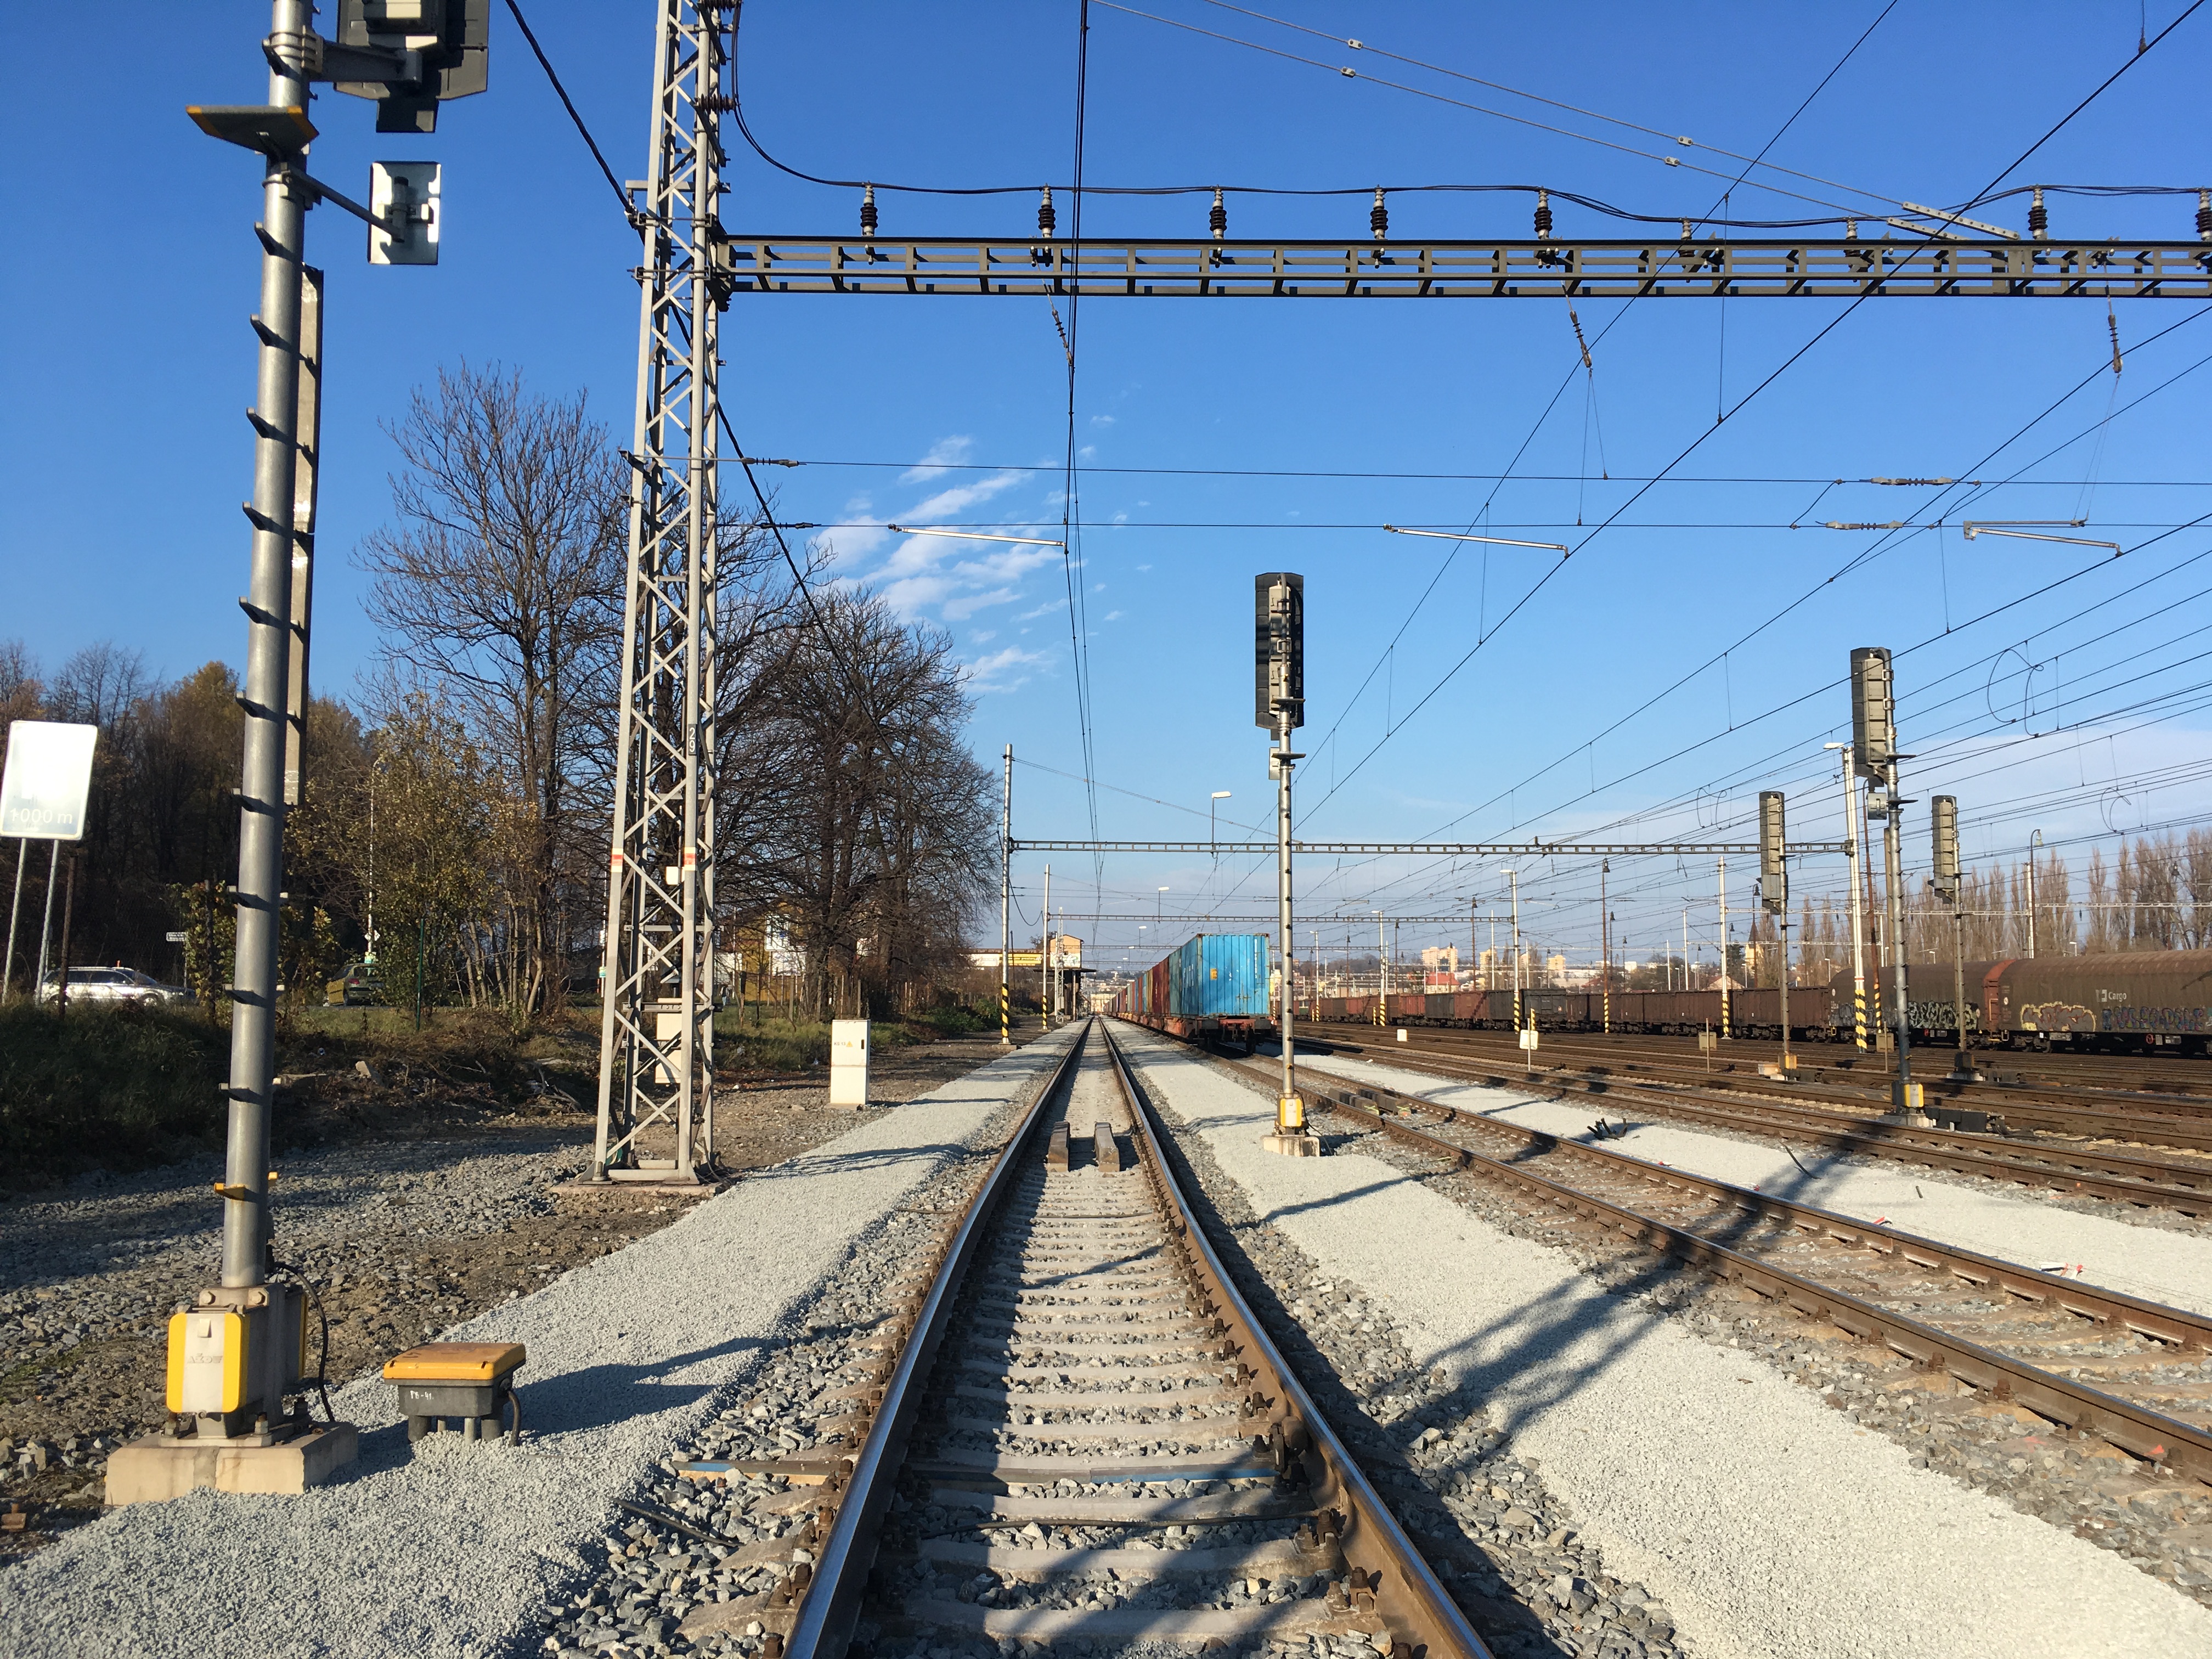 Oprava kolejí v žel. stanici Český Těšín  - Railway construction